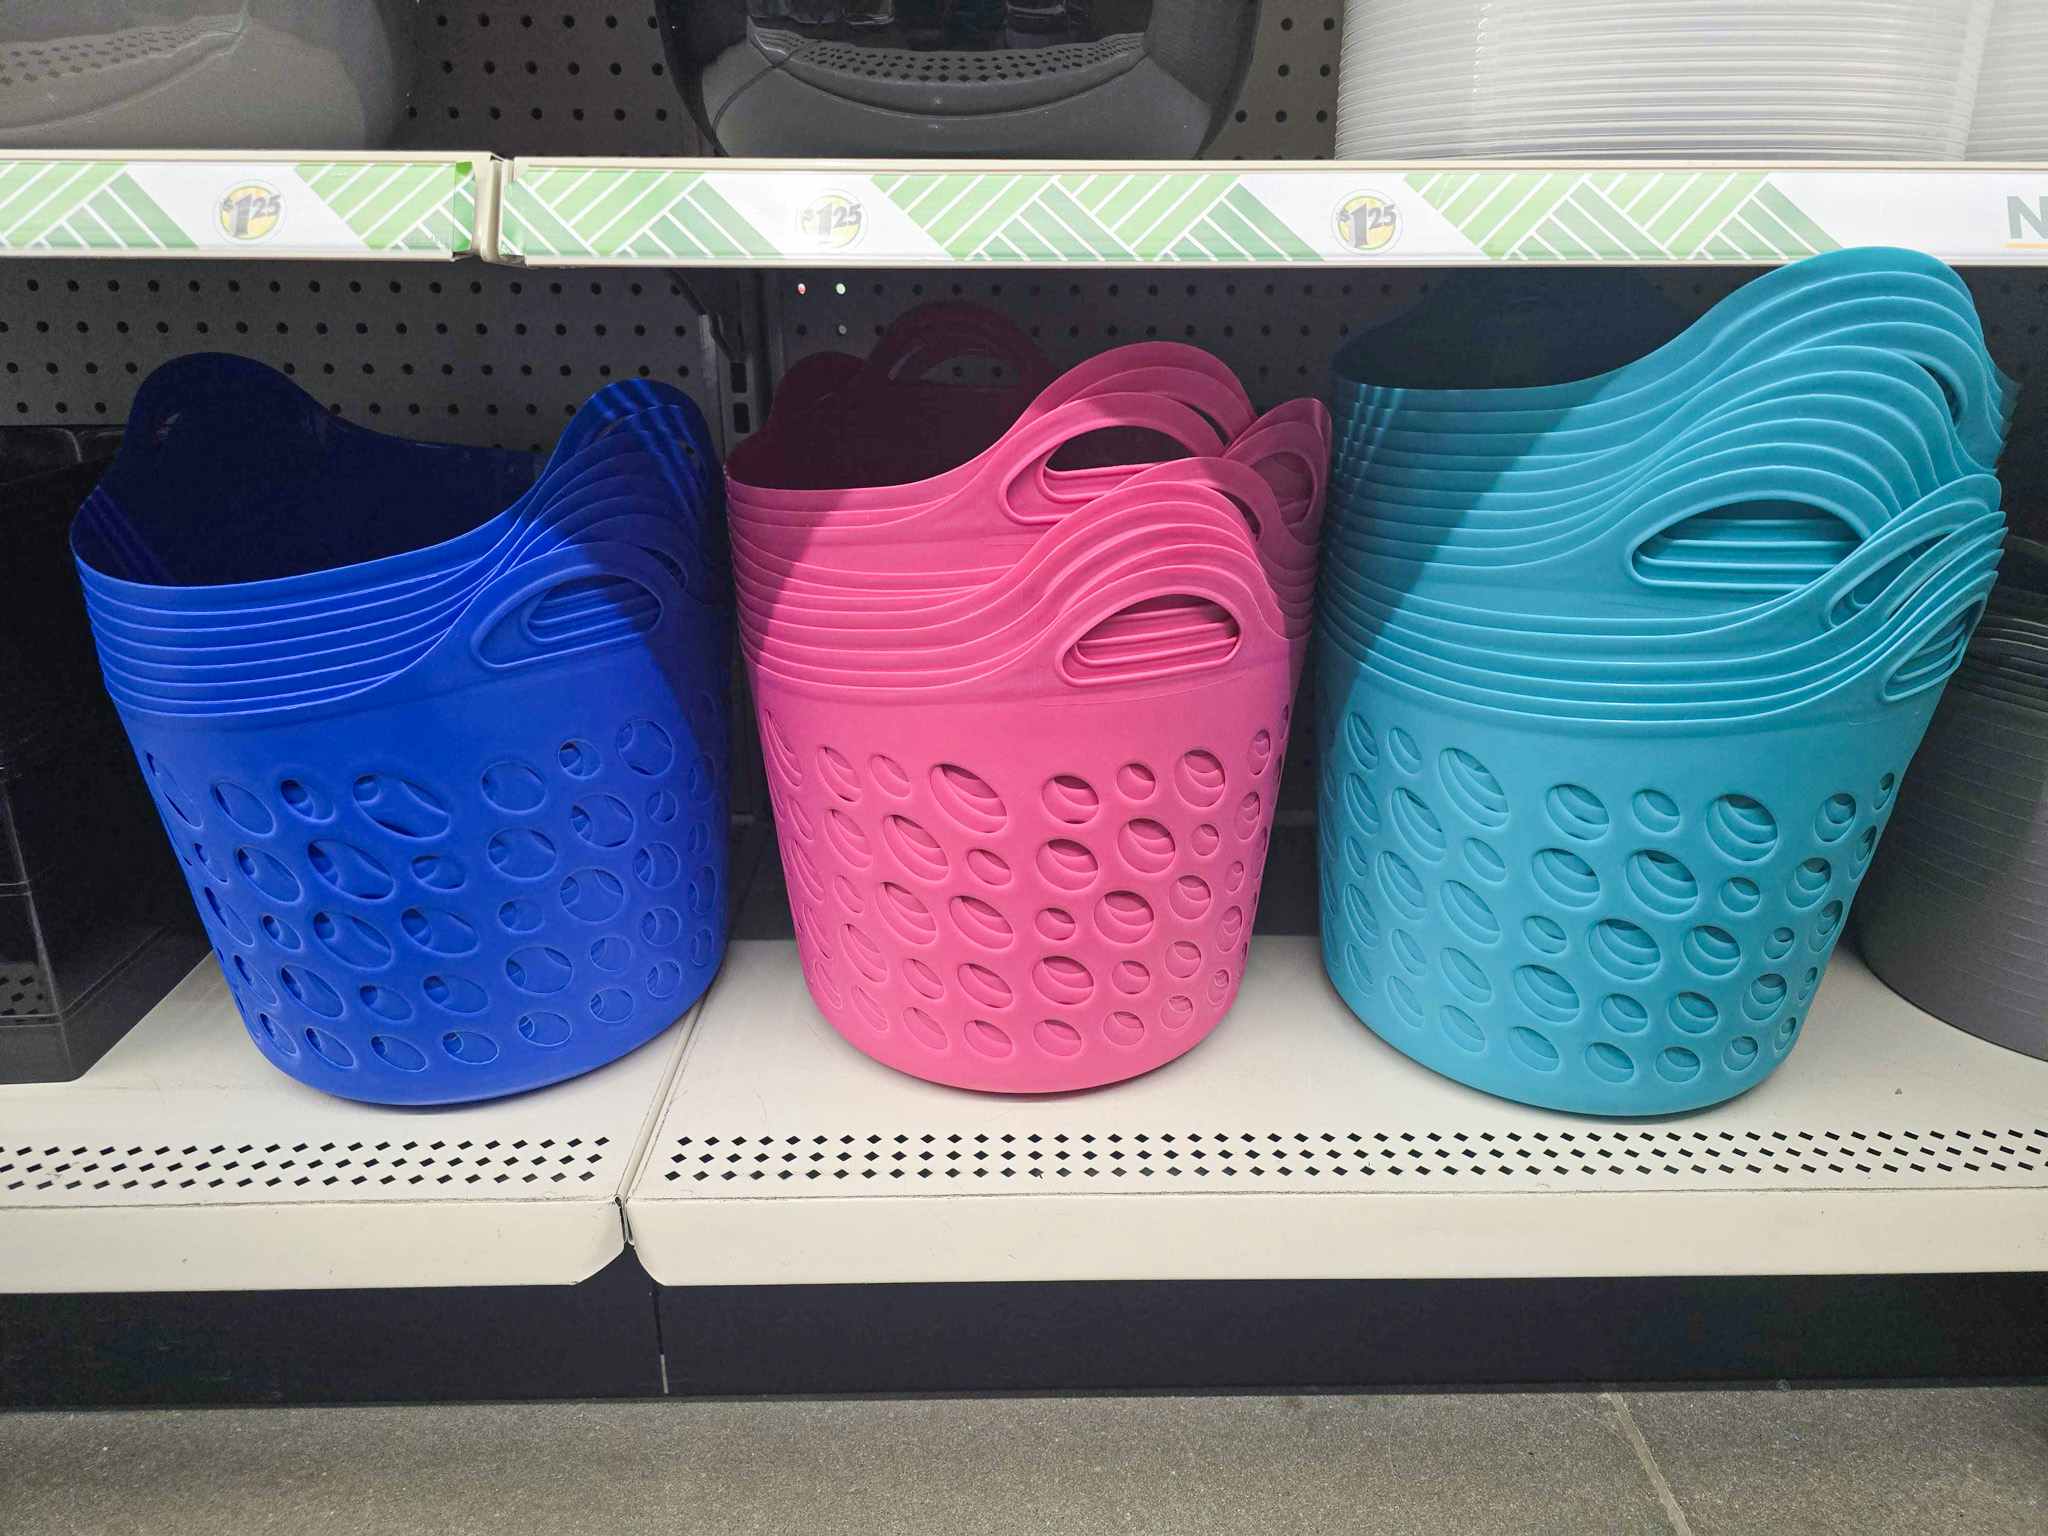 round storage baskets on a shelf